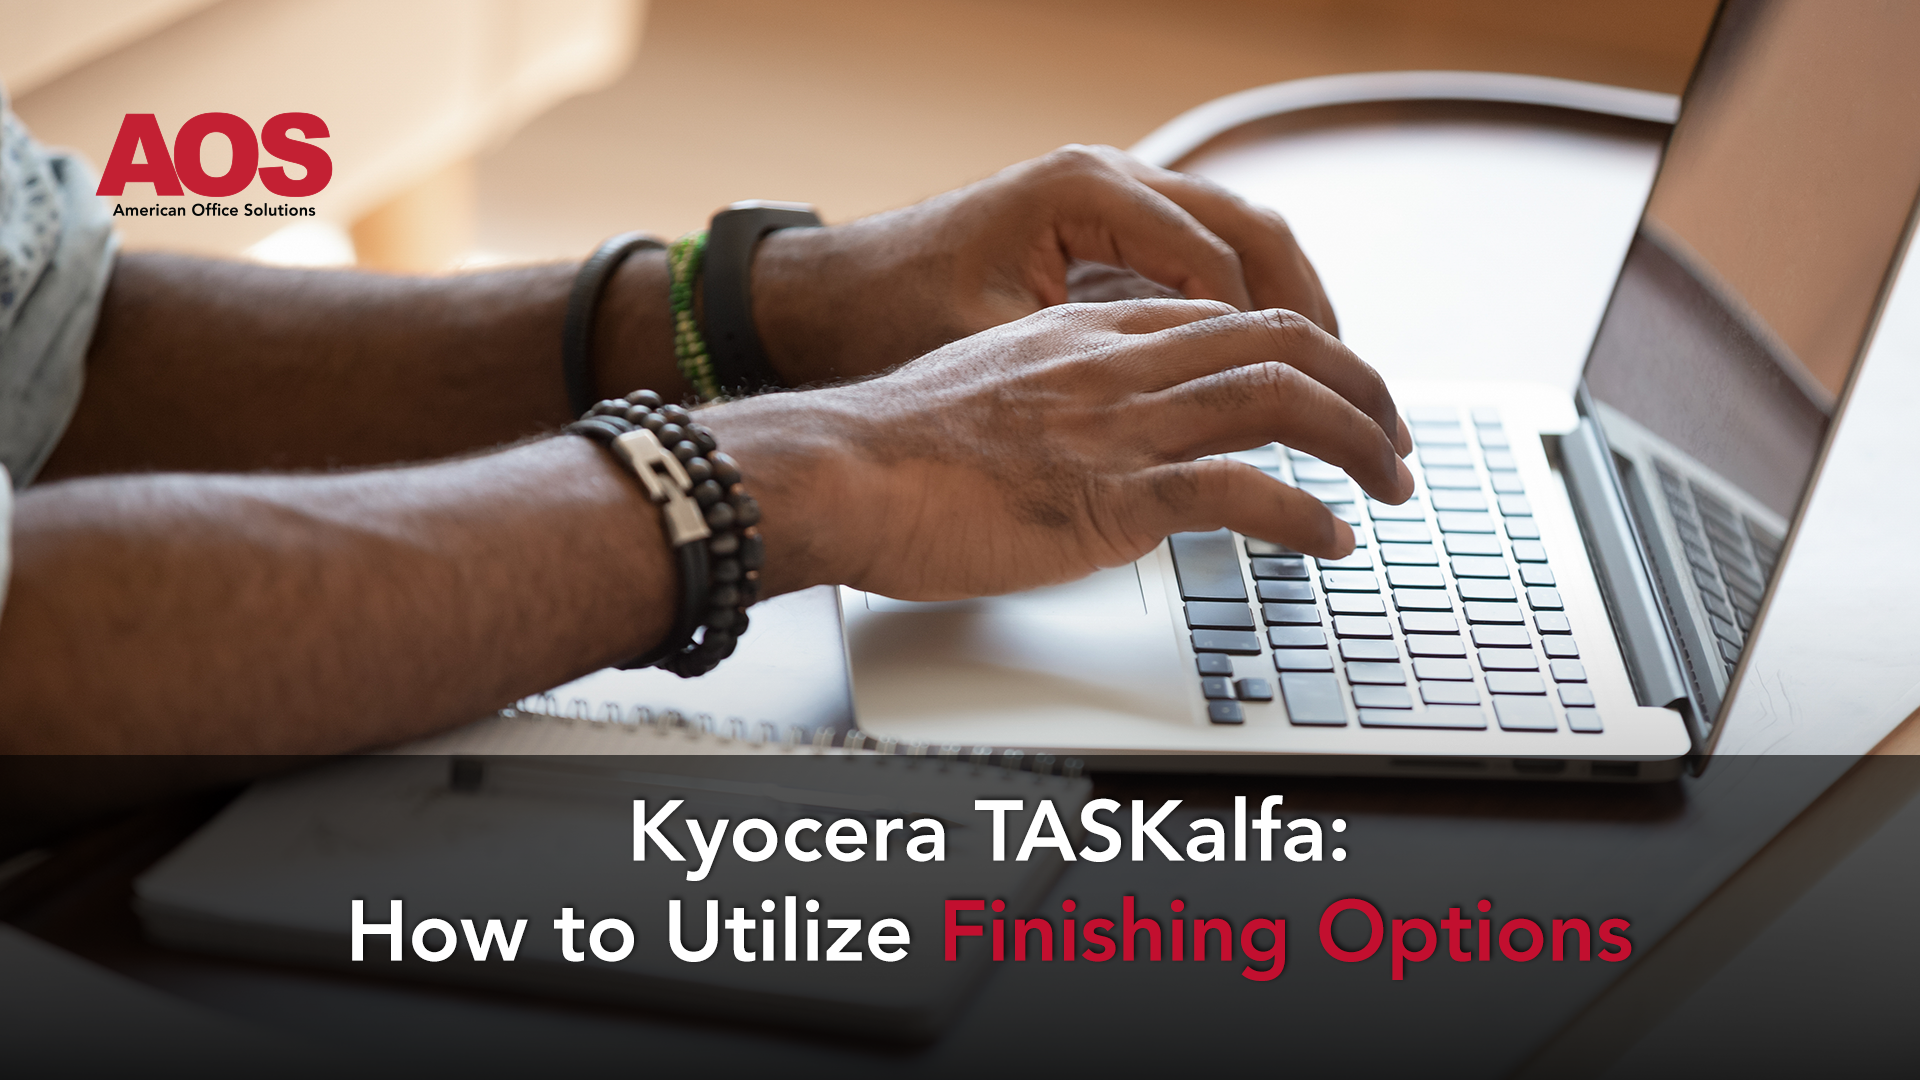 Kyocera TASKalfa: How to Utilize Finishing Options